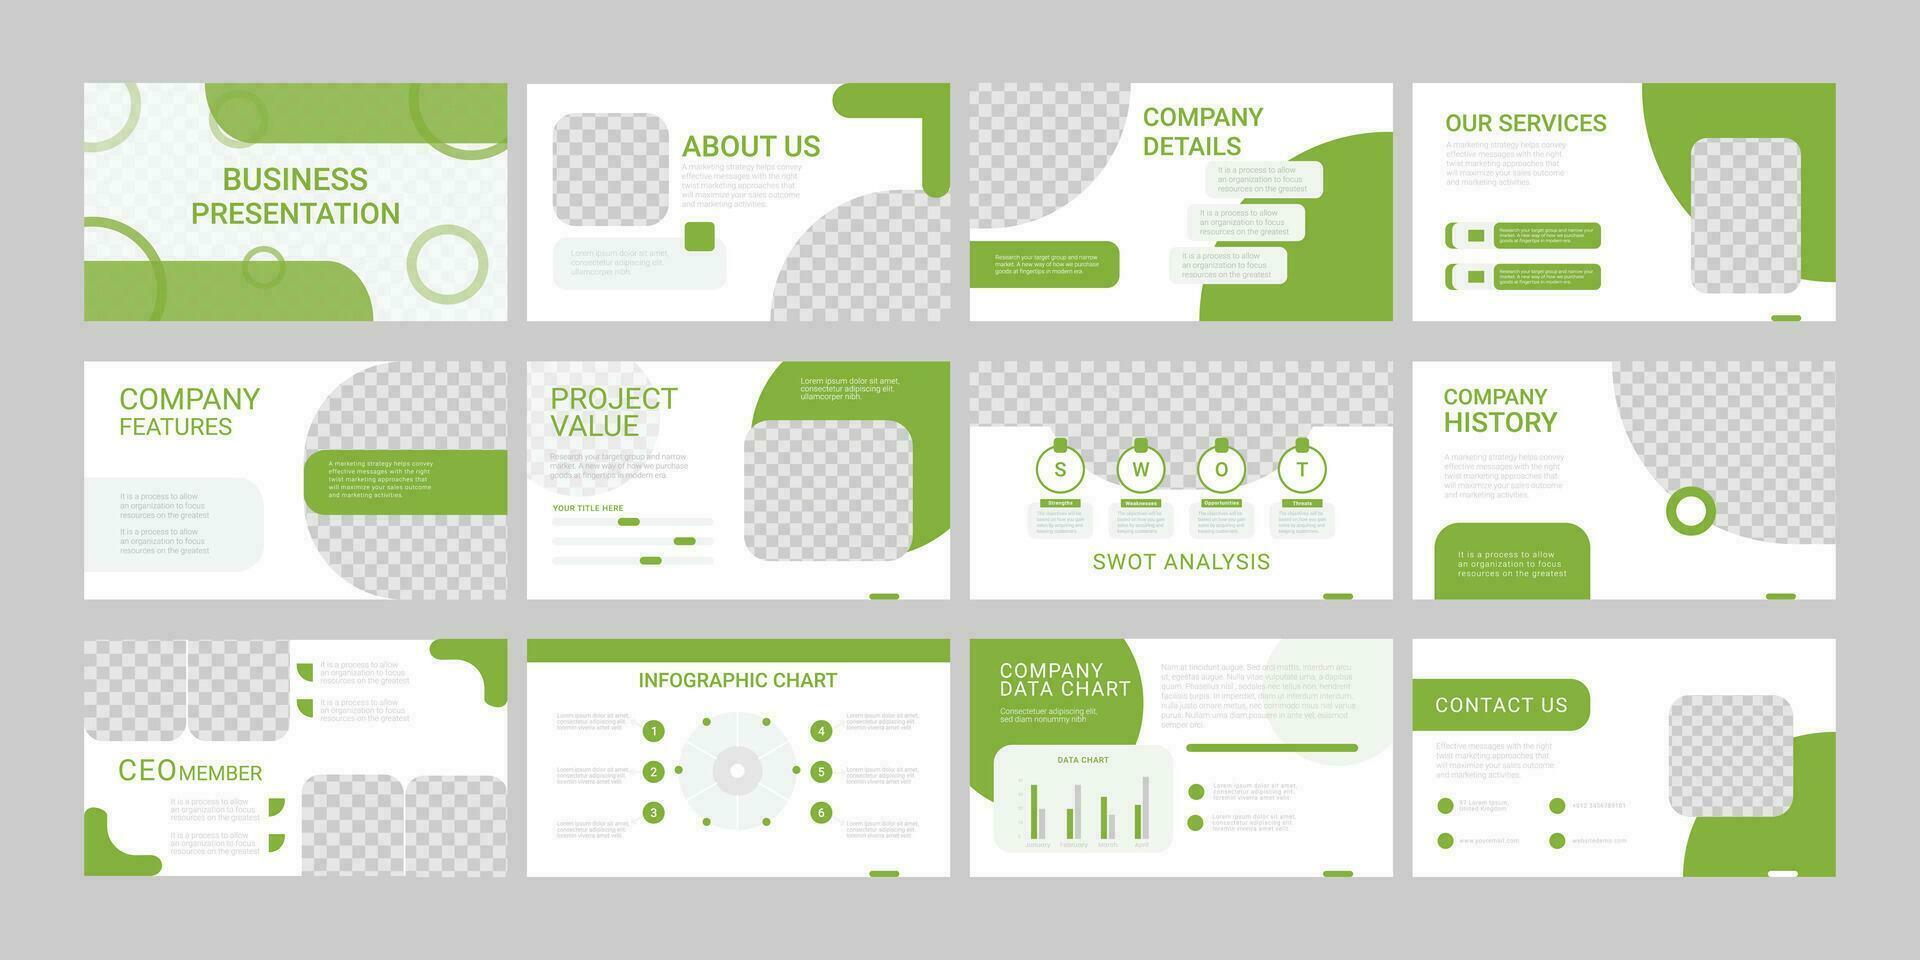 Präsentation Vorlage, Grün Infografik Elemente auf Weiß Hintergrund. Vektor rutschen Vorlage zum Geschäft Projekt Präsentationen und Marketing.